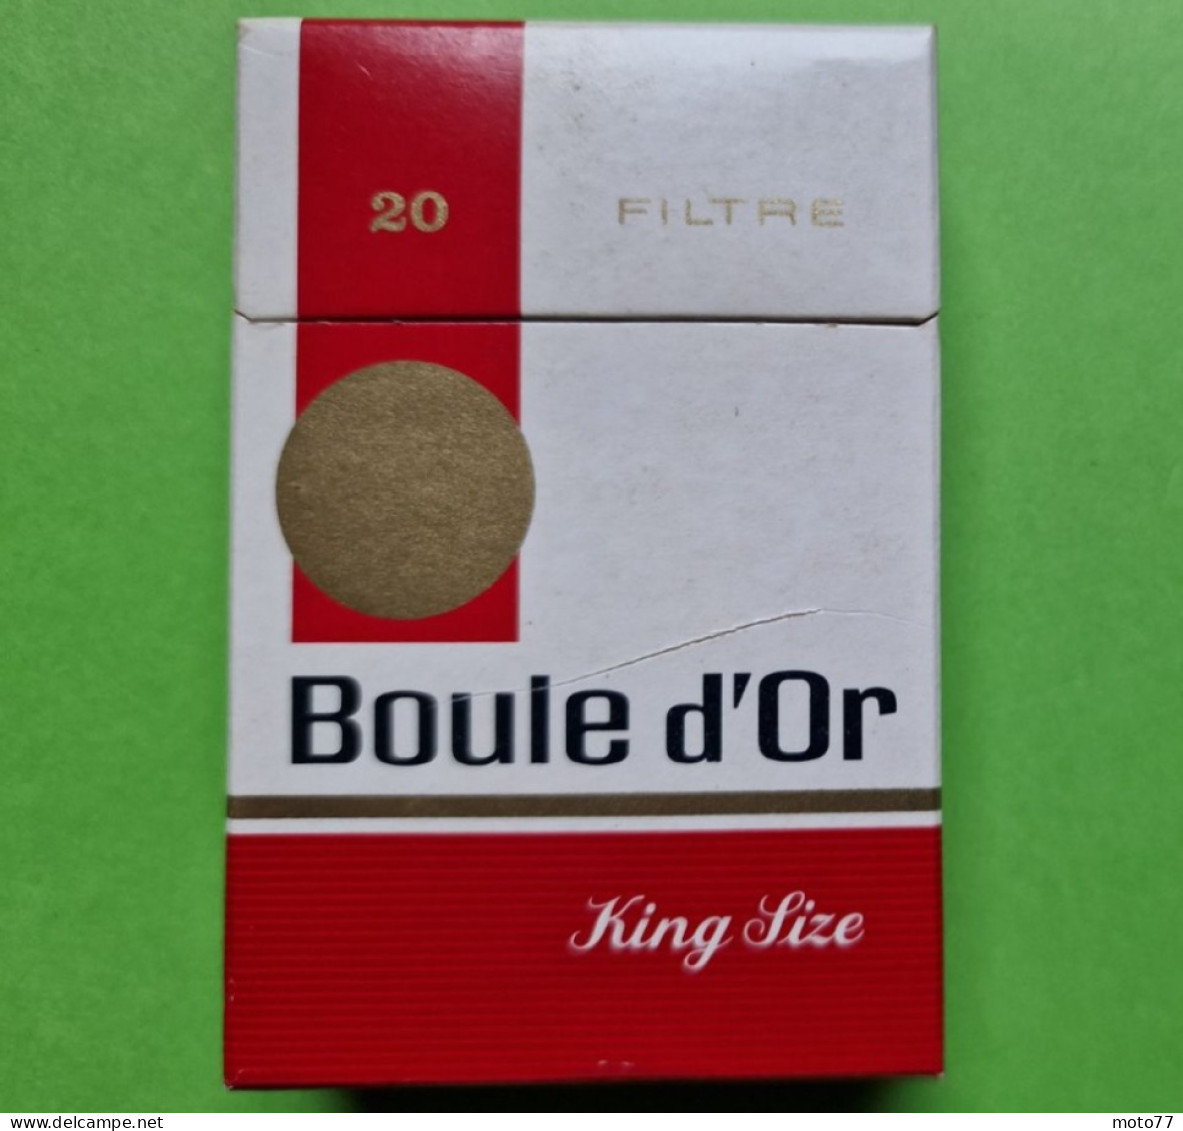 Ancien PAQUET De CIGARETTES Vide - BOULE D'OR - Vers 1980 - Etuis à Cigarettes Vides